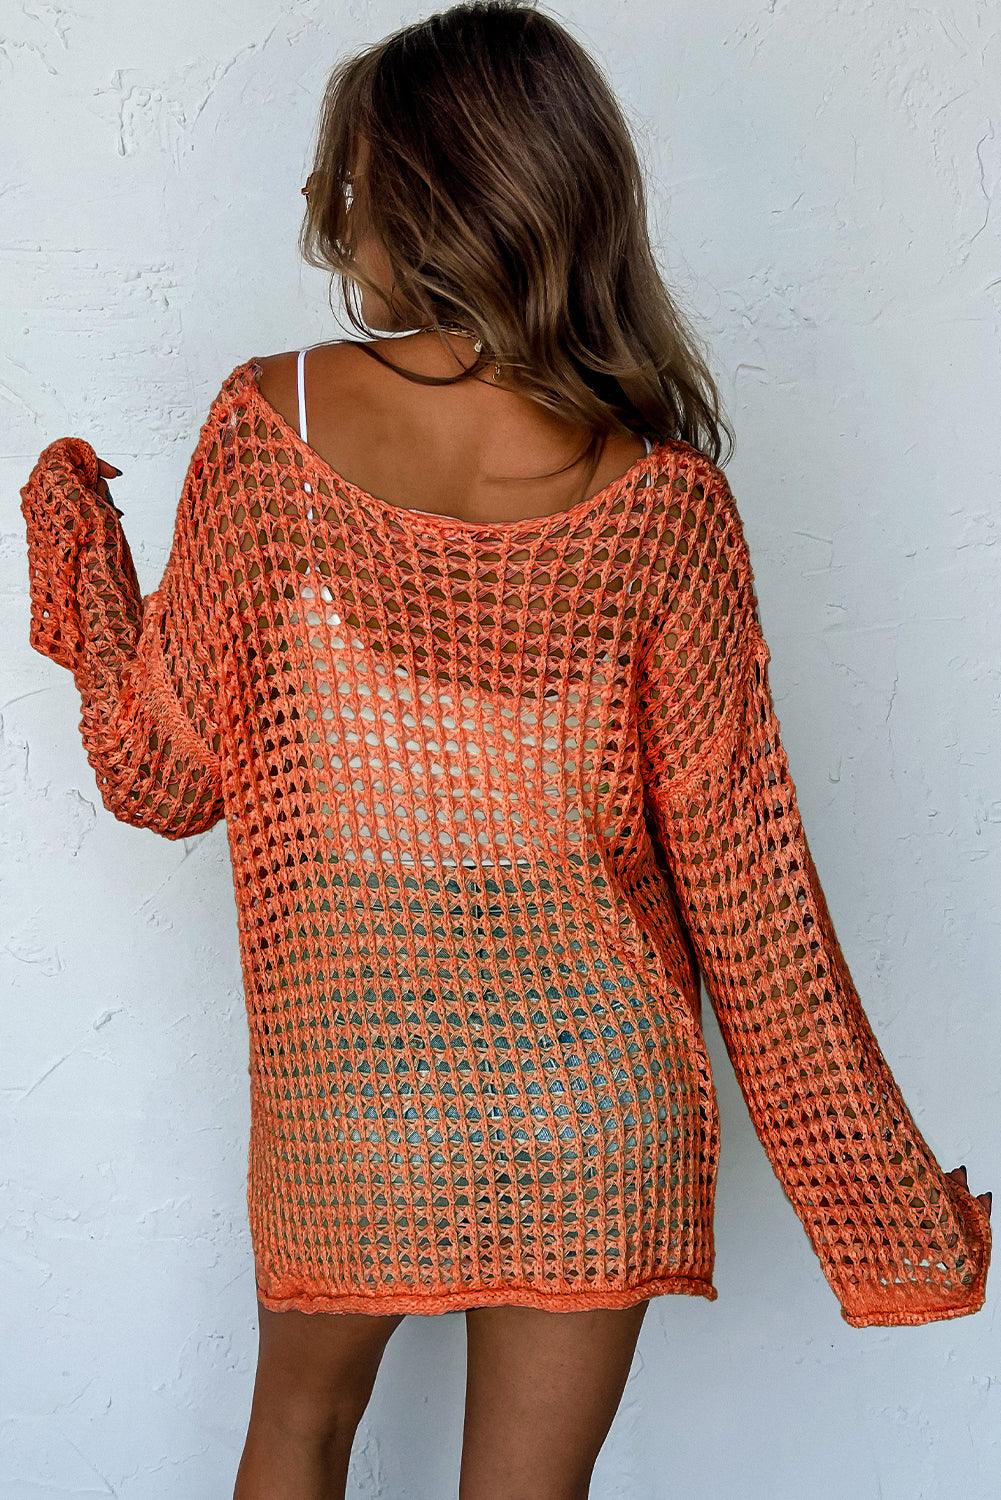 Orange Open Knit Crochet Bell Sleeve Tunic Sweater - L & M Kee, LLC